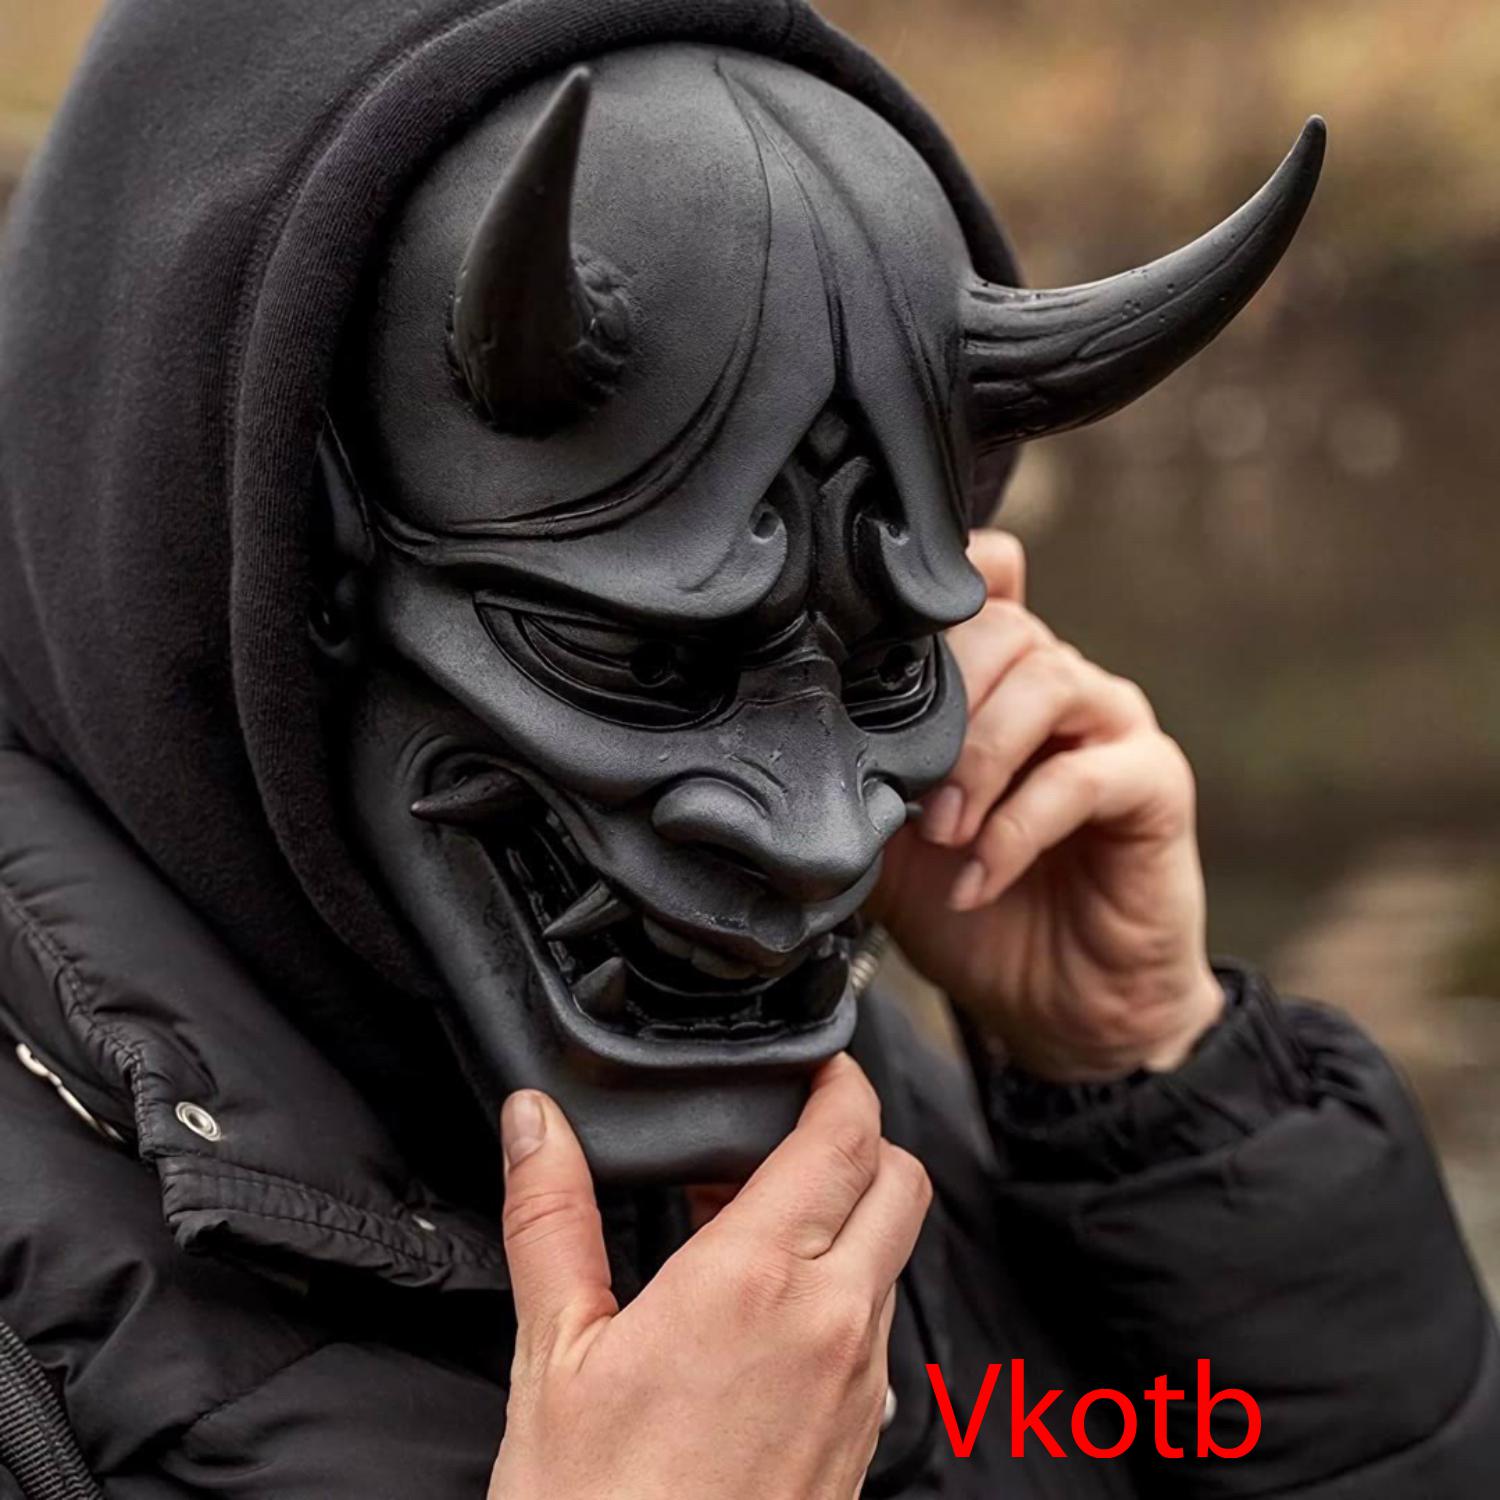 Vkotb - 精神慢摇